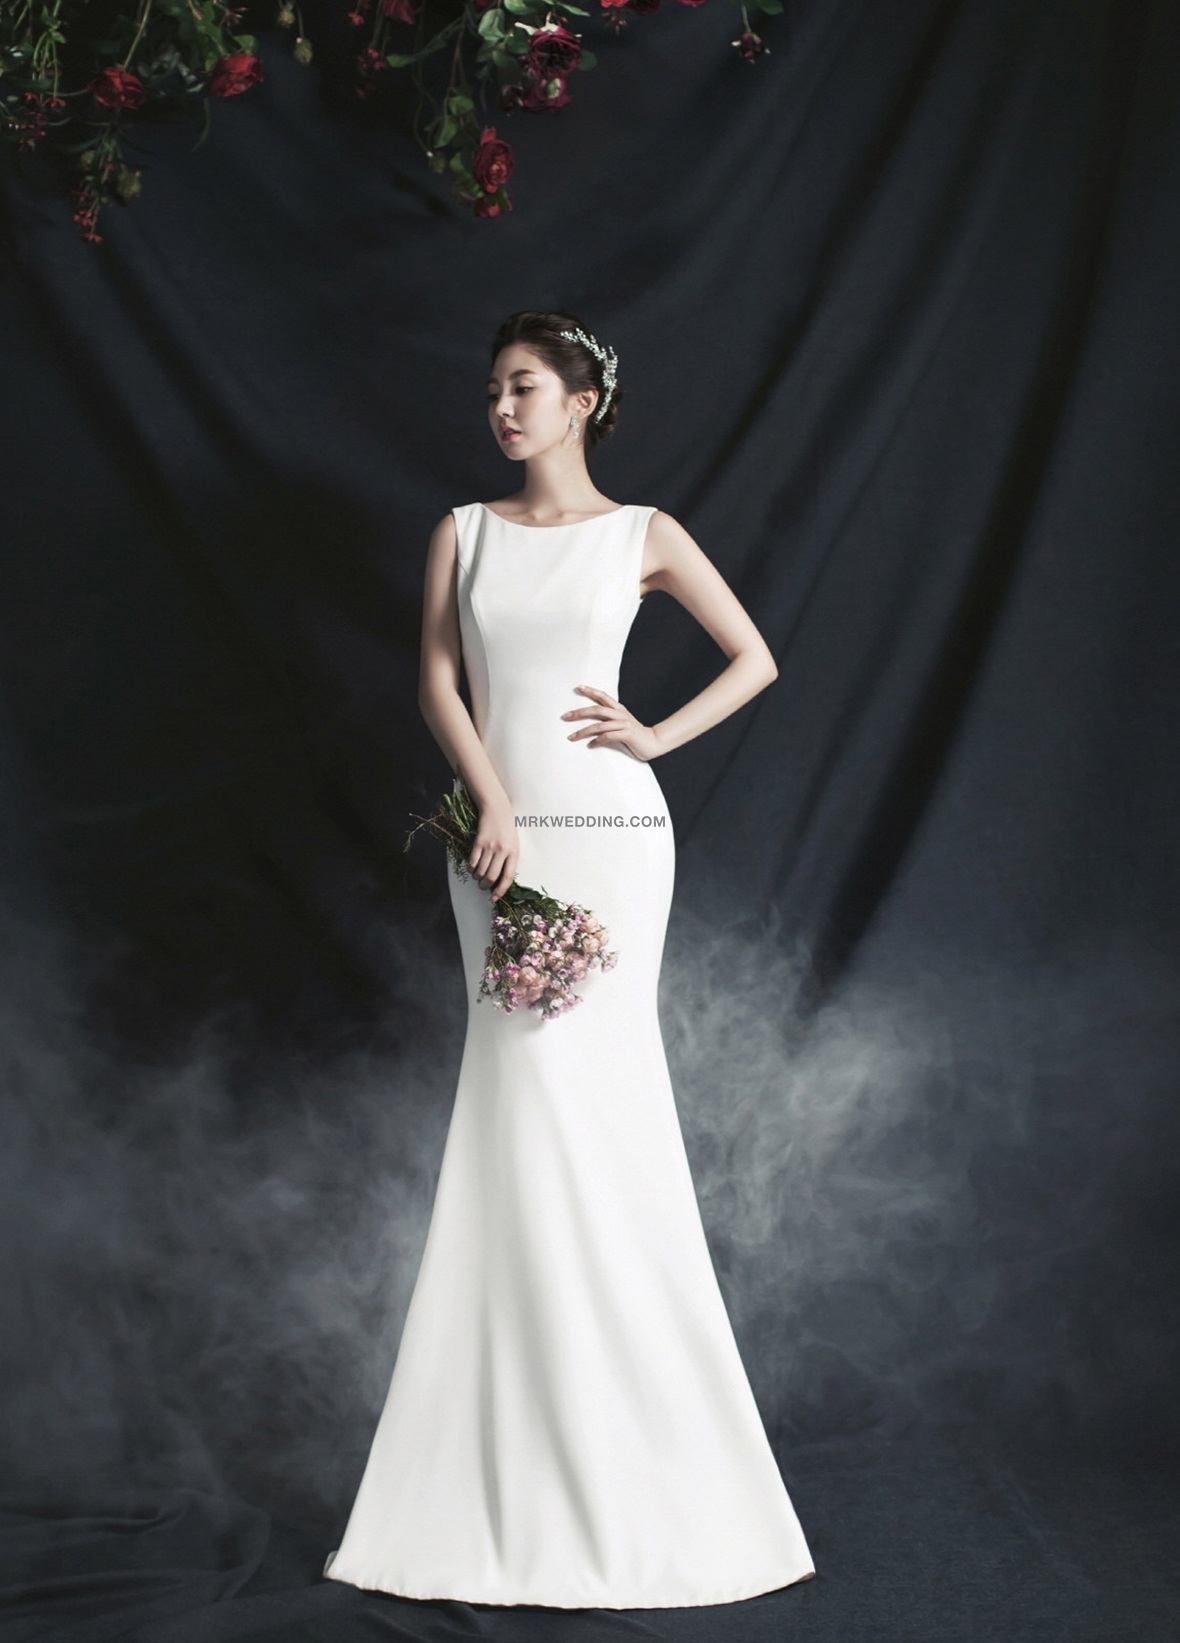 Korea pre wedding (48).jpg